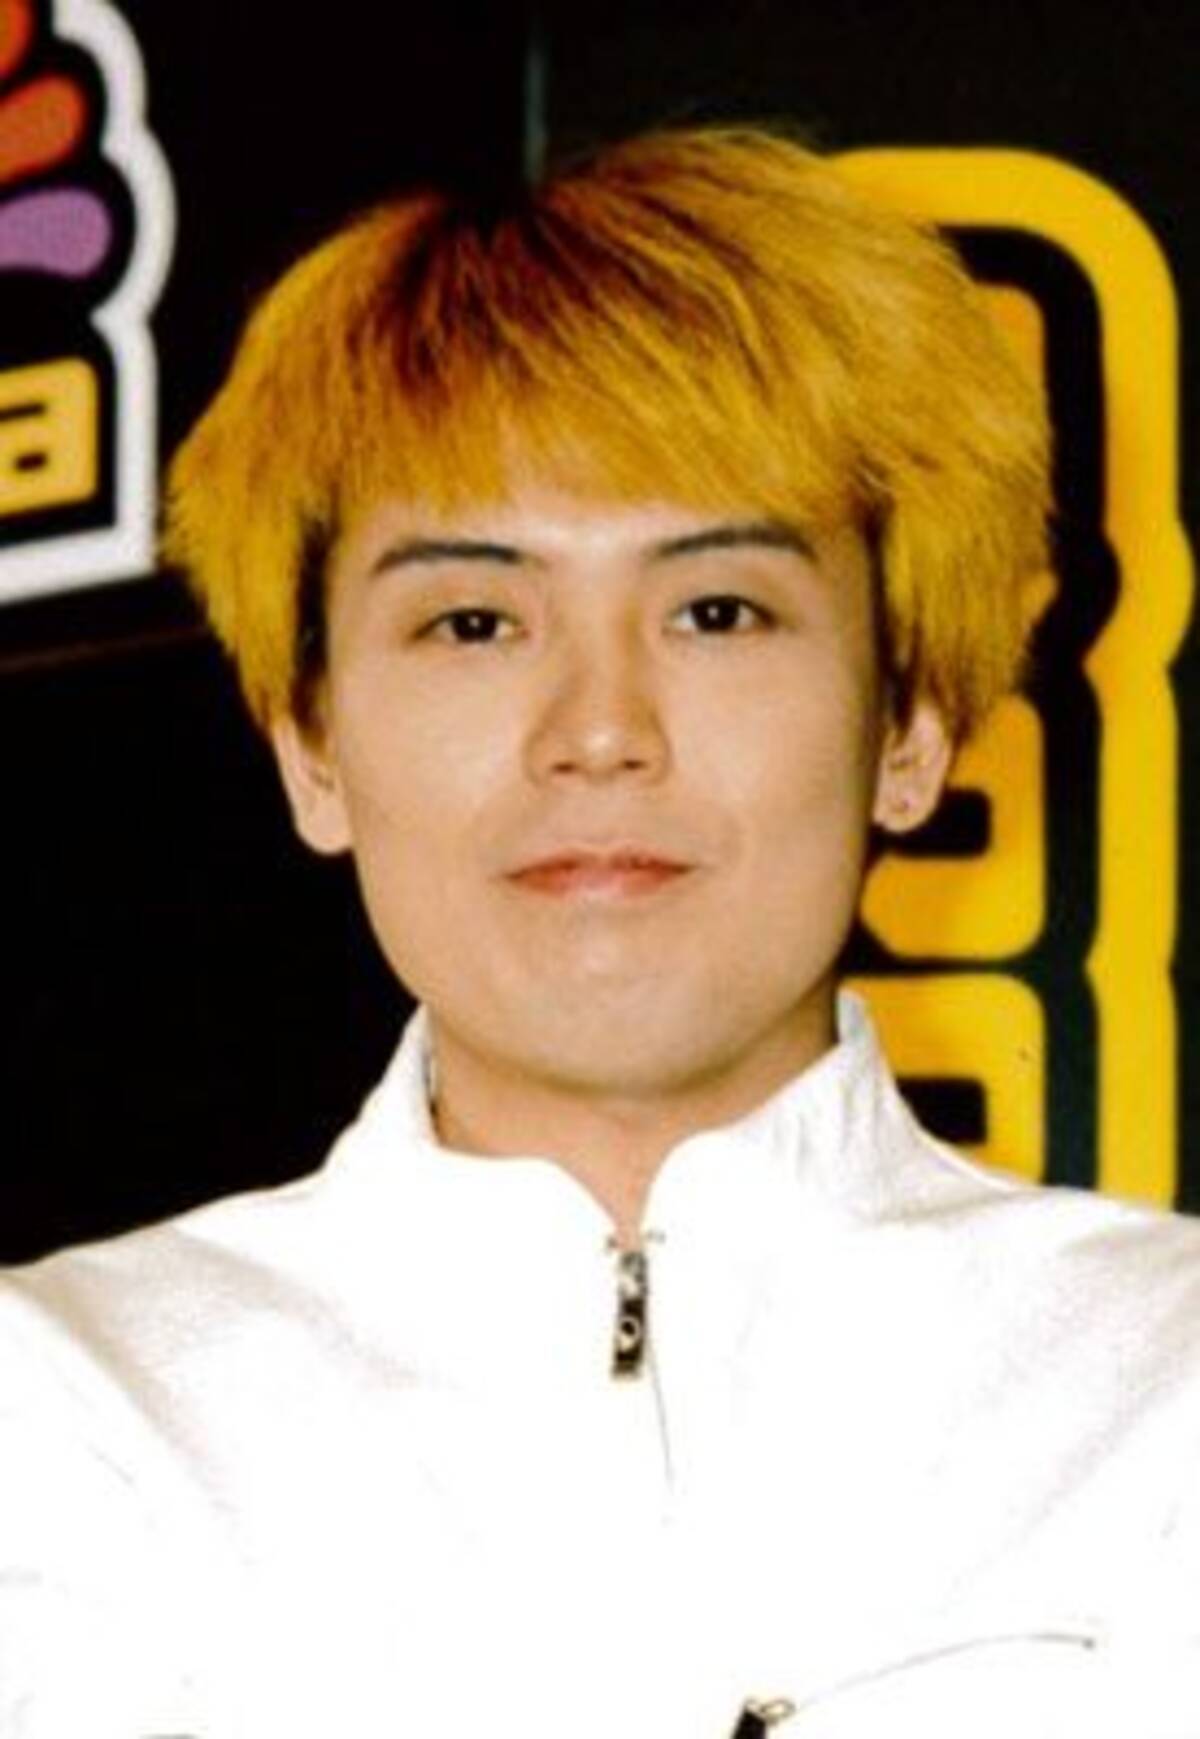 コテコテの浪花男から敏腕プロデューサーへ……平成J-POP史における、つんく♂の軌跡 (2019年1月11日) - エキサイトニュース